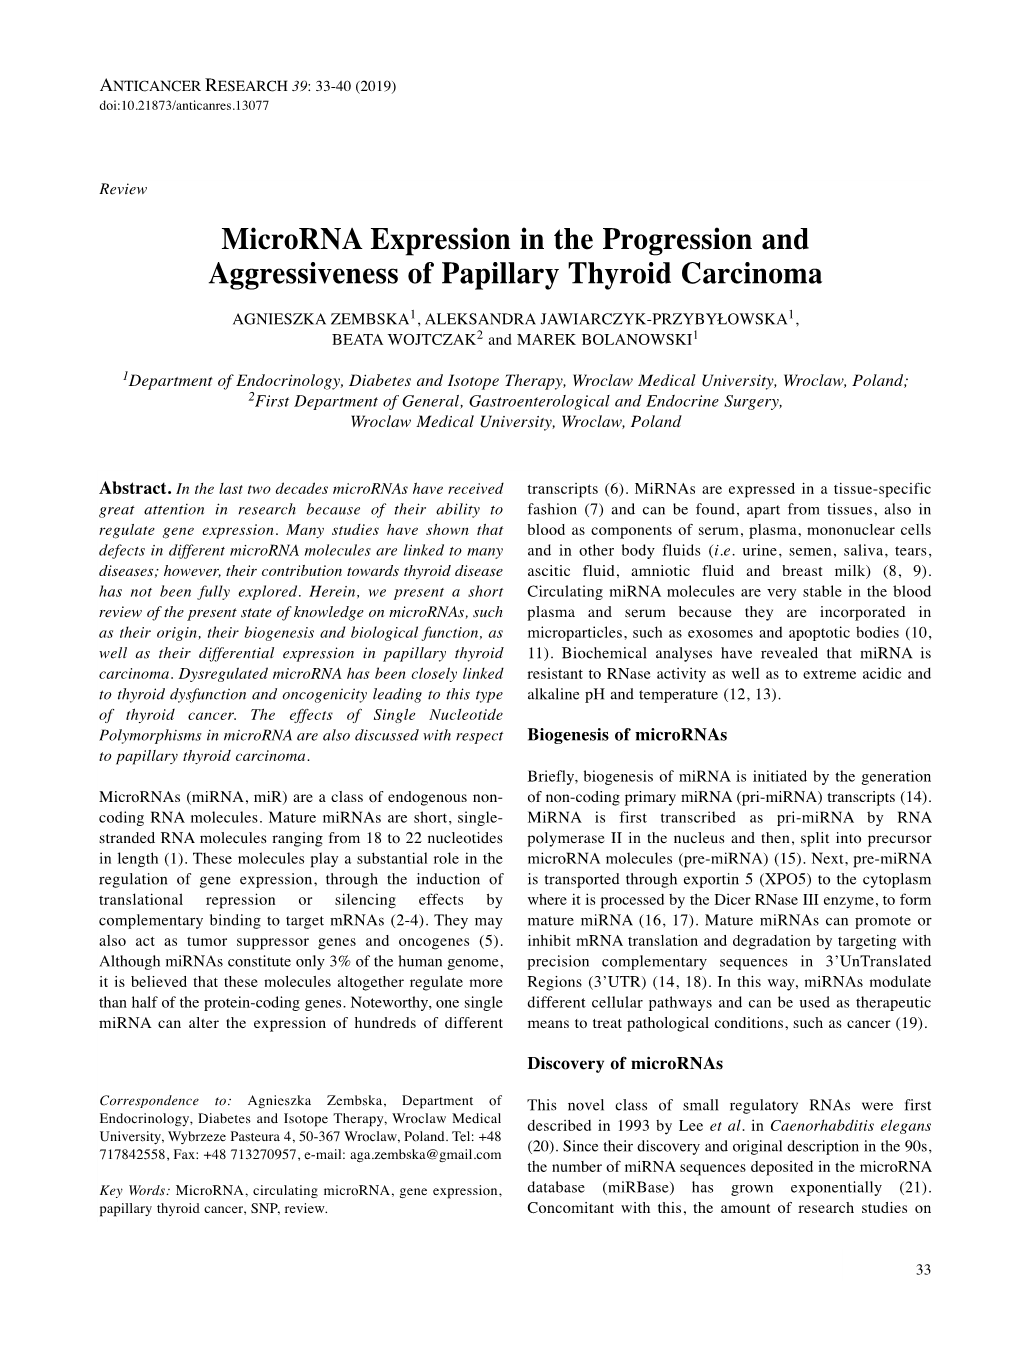 Microrna Expression in the Progression and Aggressiveness Of